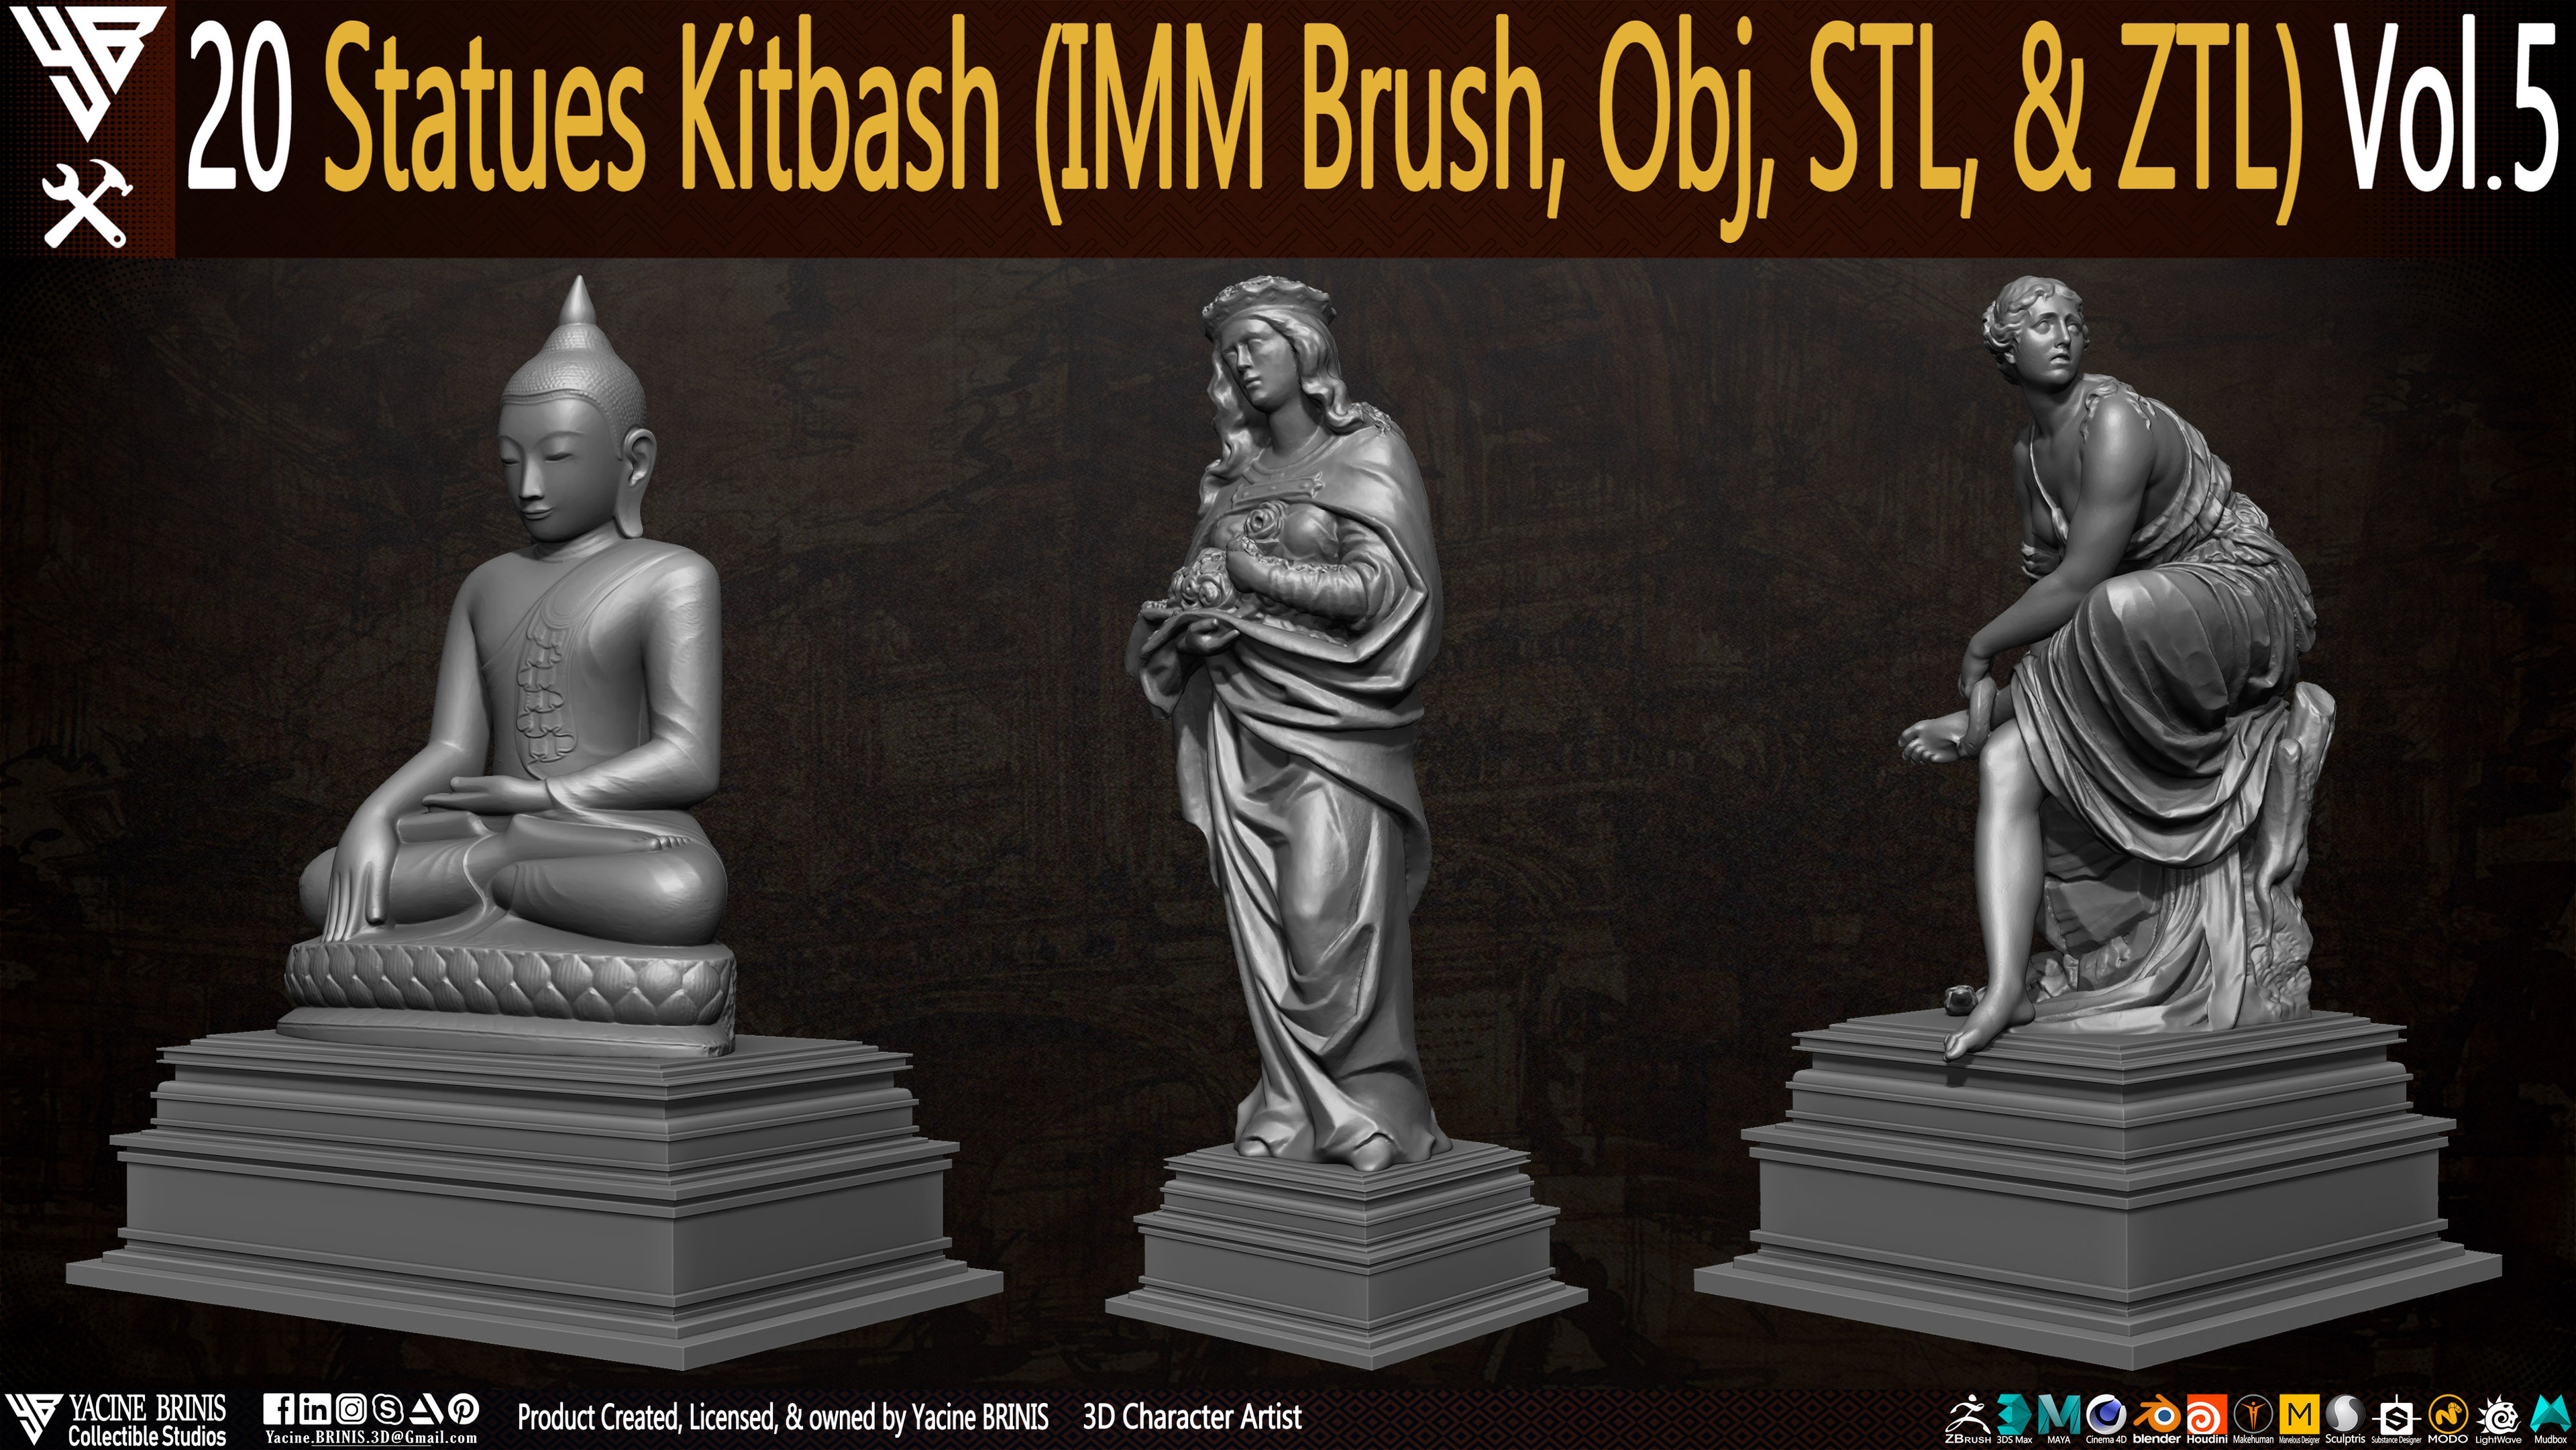 Statues Kitbash by yacine brinis Set 24